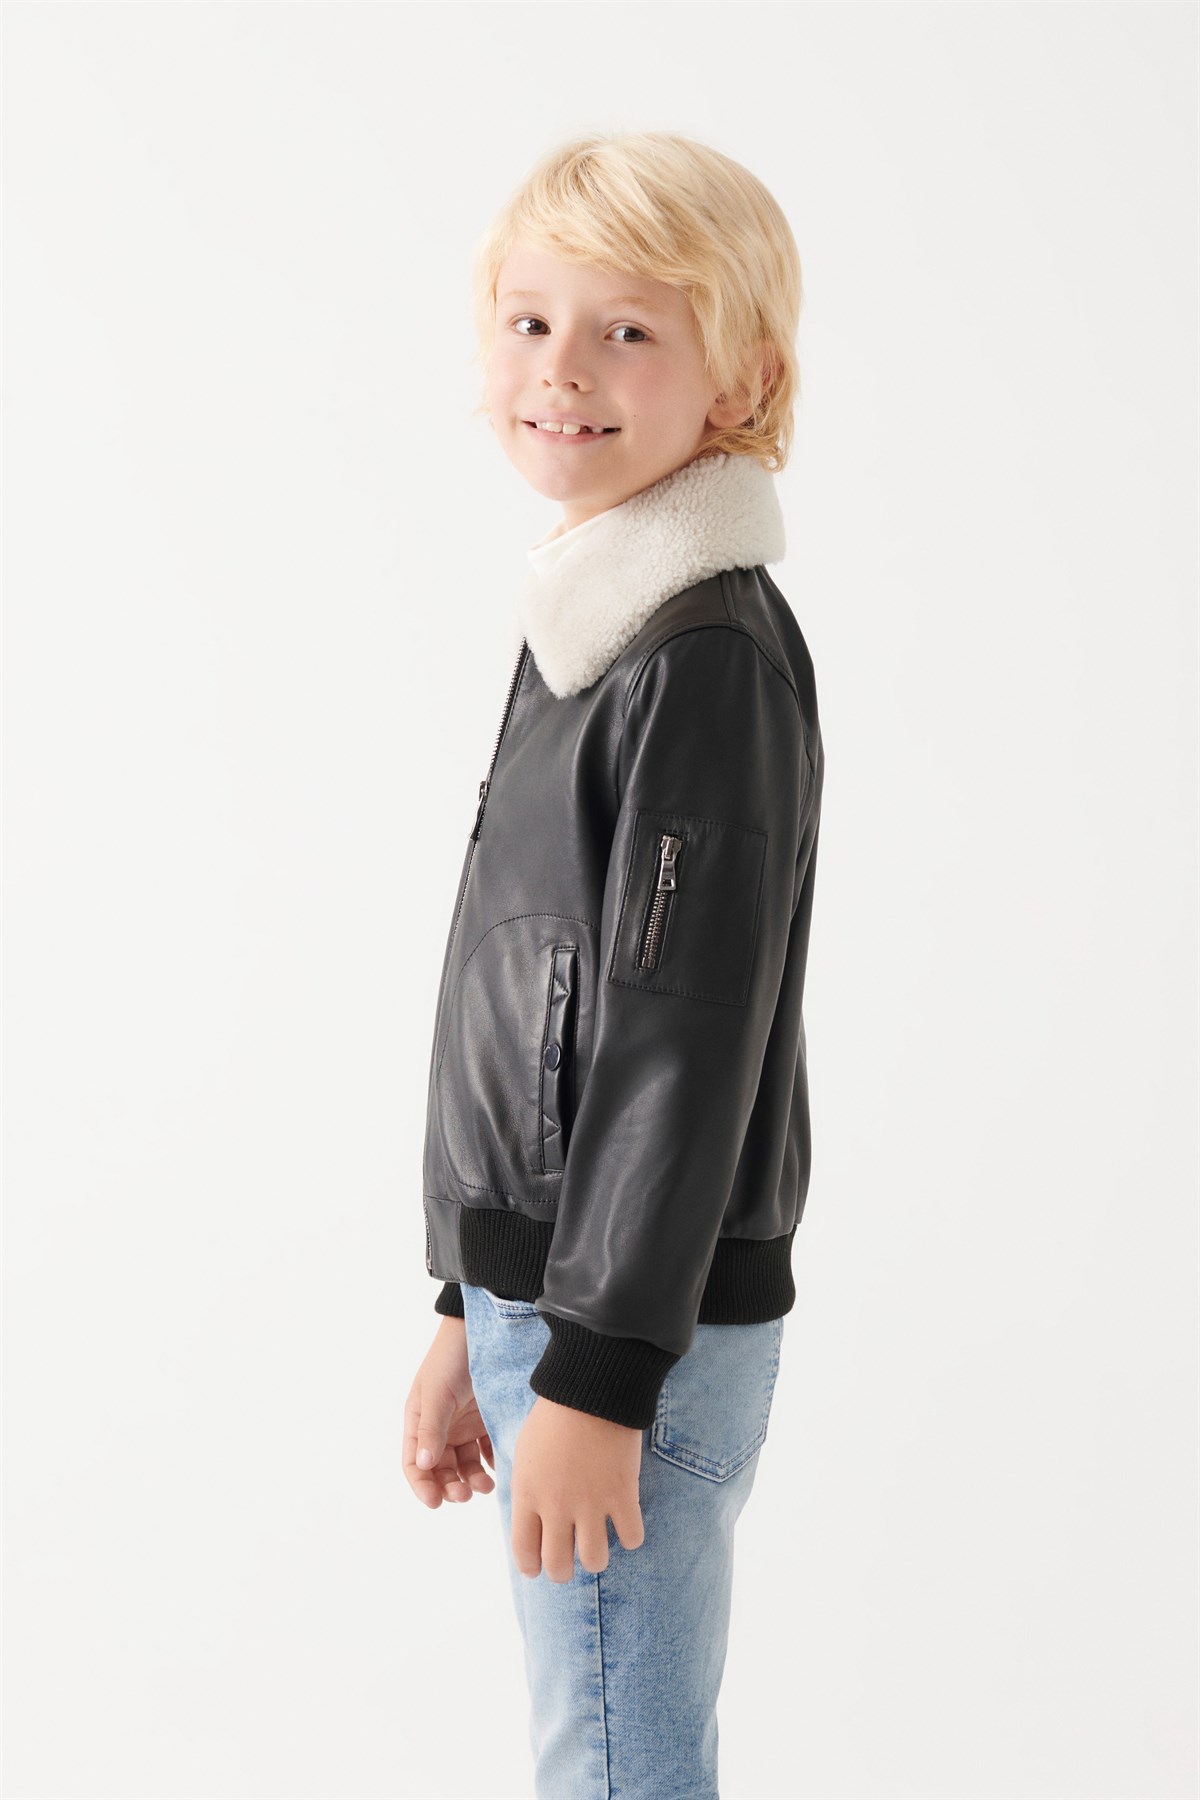 AVATAR Boys Black Leather Jacket | Boys Leather and Shearling Jacket & Coat